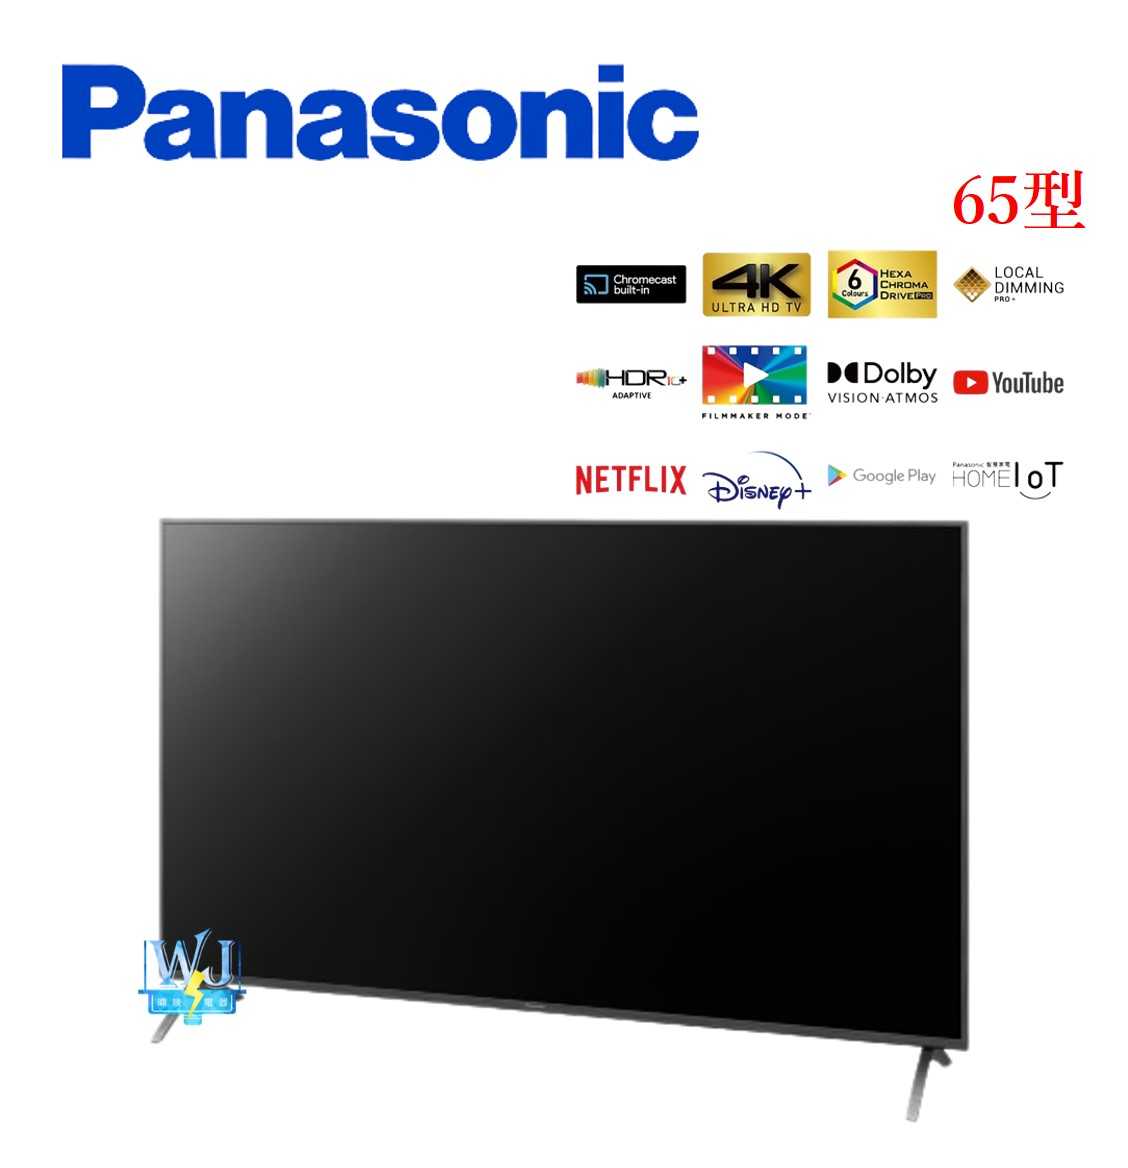 原廠保固【暐竣電器】Panasonic 國際 TH65LX900W 65型液晶電視 TH-65LX900W 4K電視